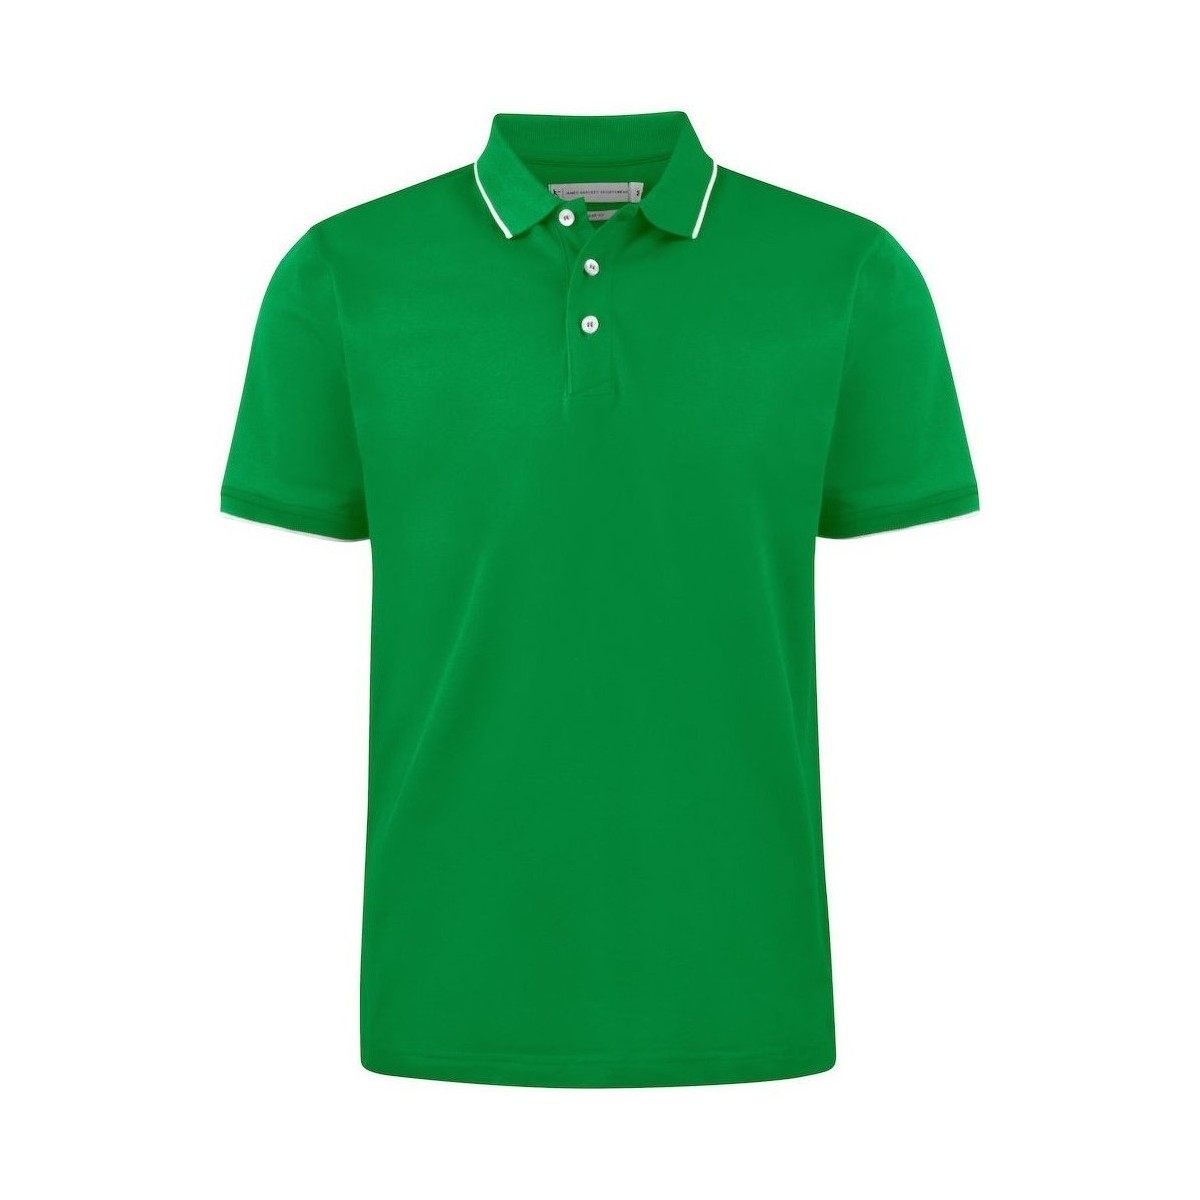 textil Hombre Tops y Camisetas James Harvest Greenville Verde